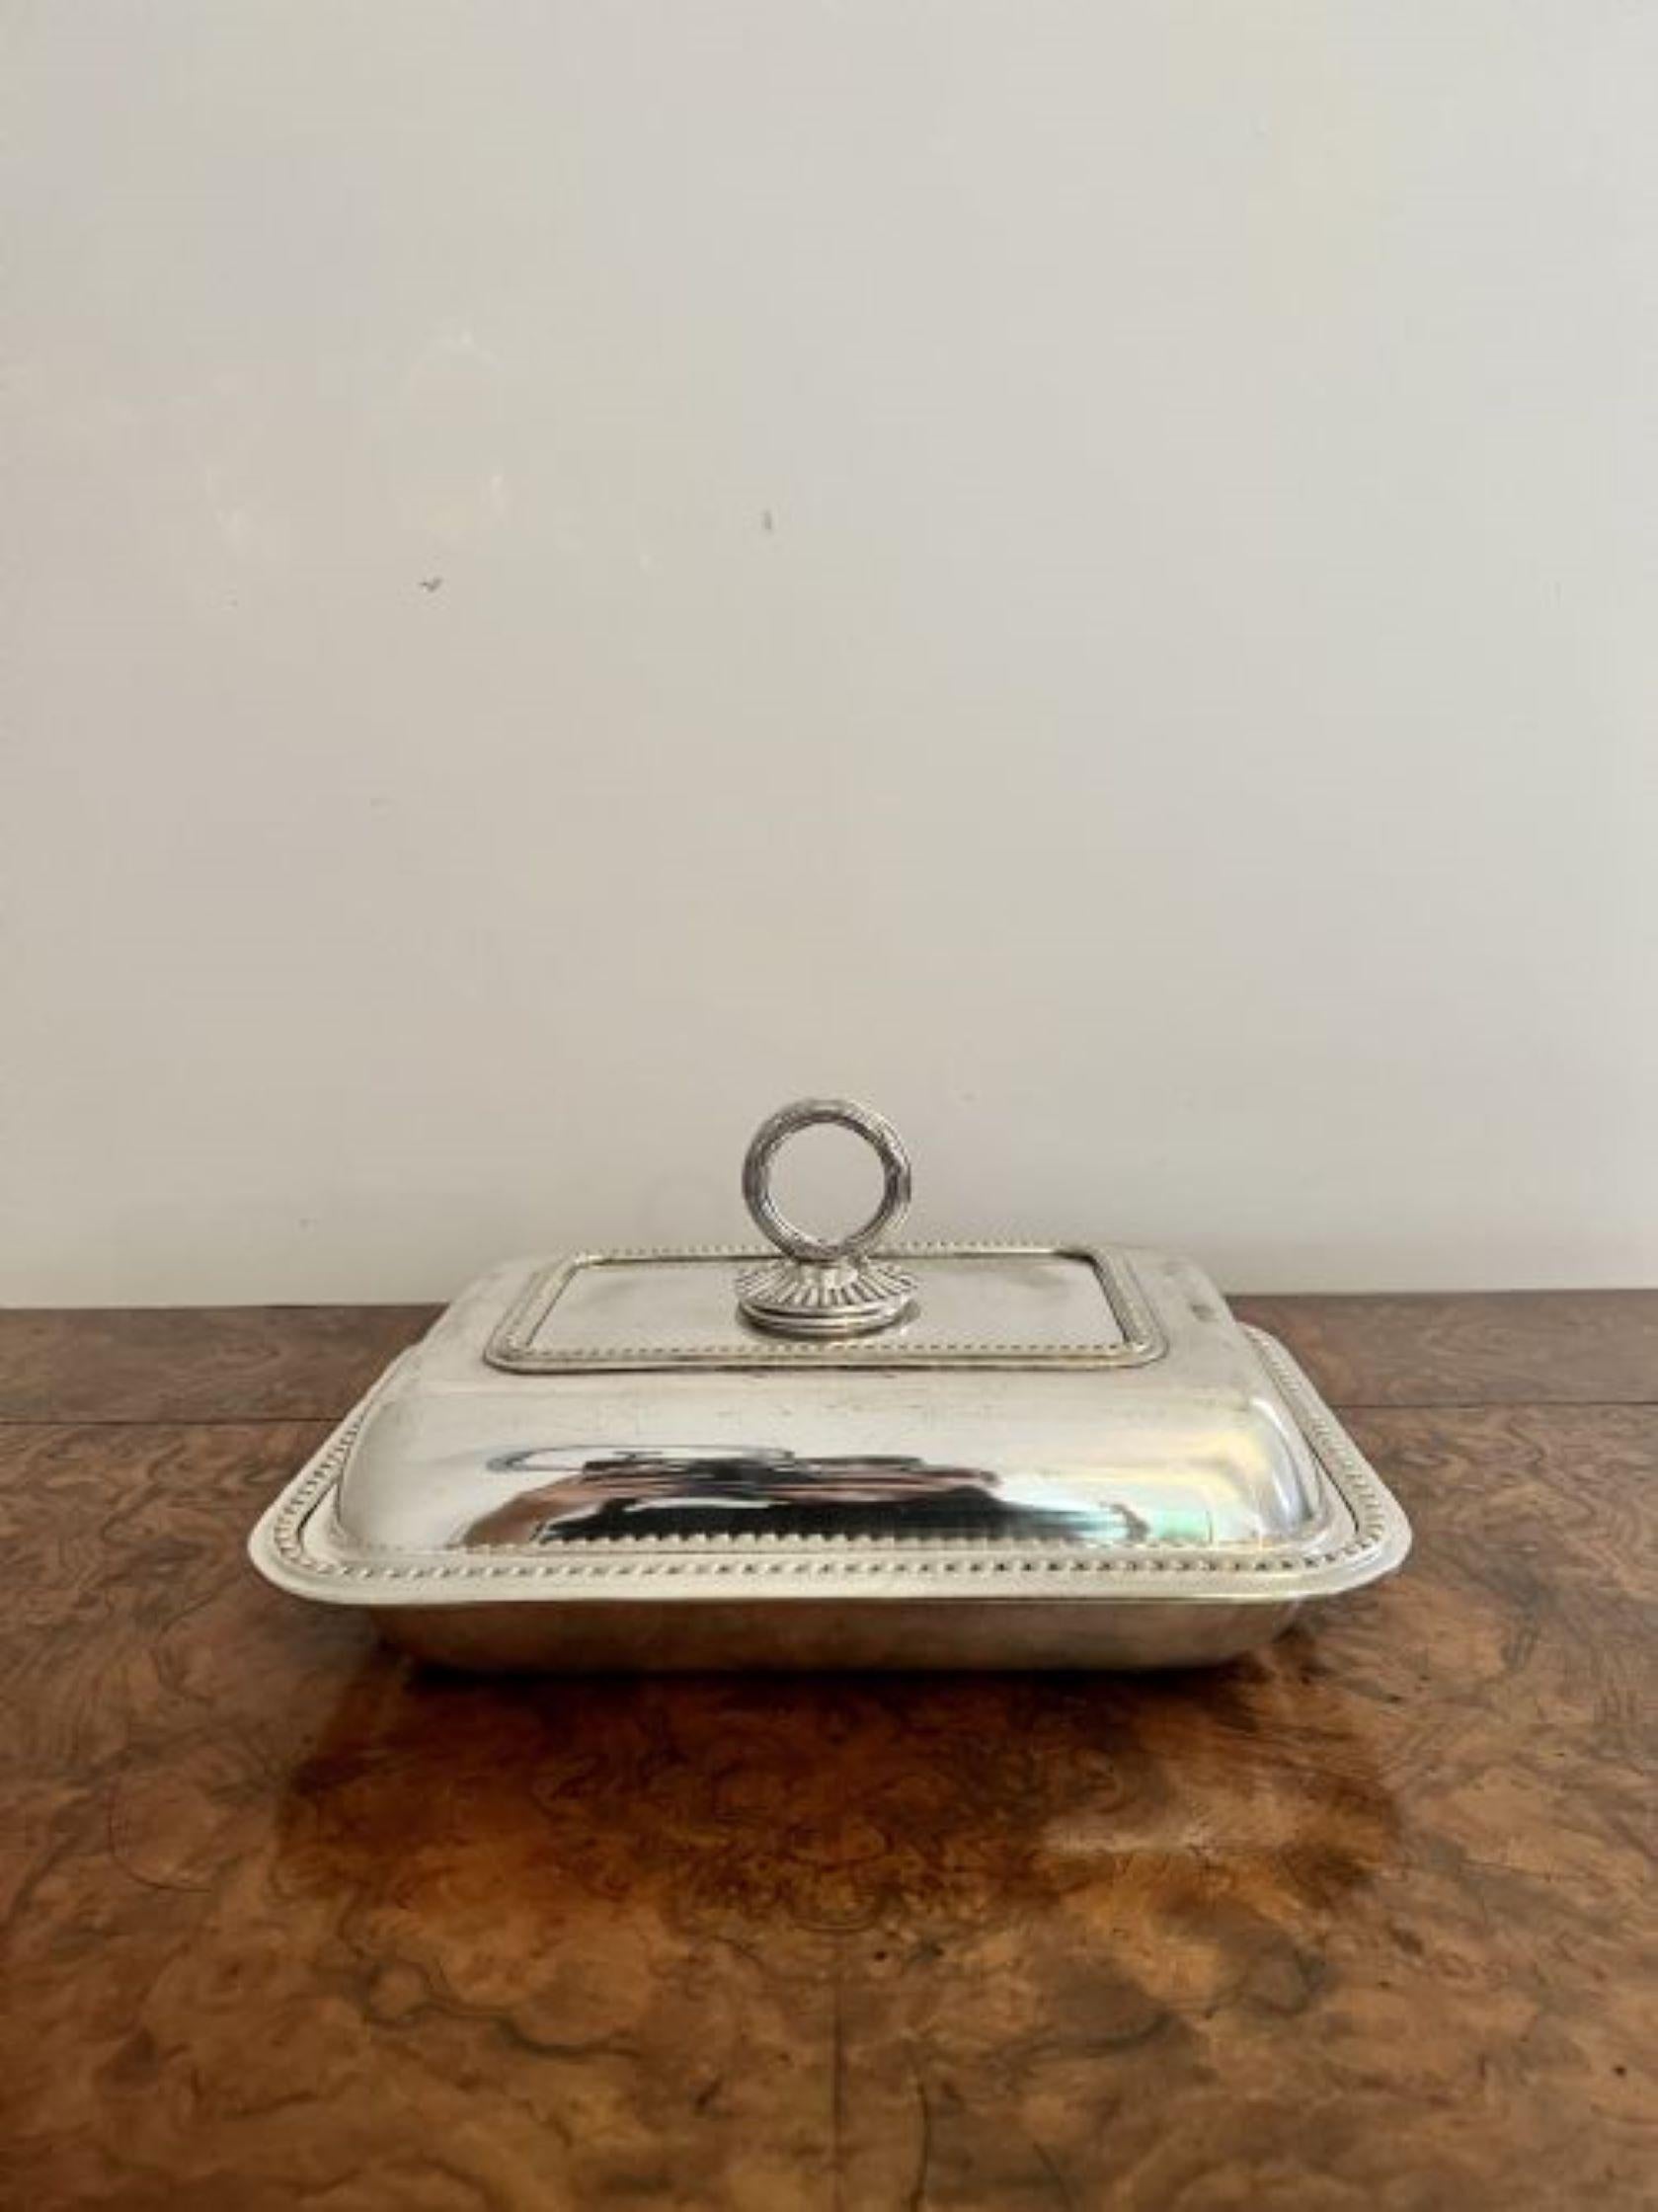 Ancien plat d'entrée en métal argenté Edwardien de qualité, de forme rectangulaire, avec une poignée amovible ornée sur le dessus et un couvercle amovible.